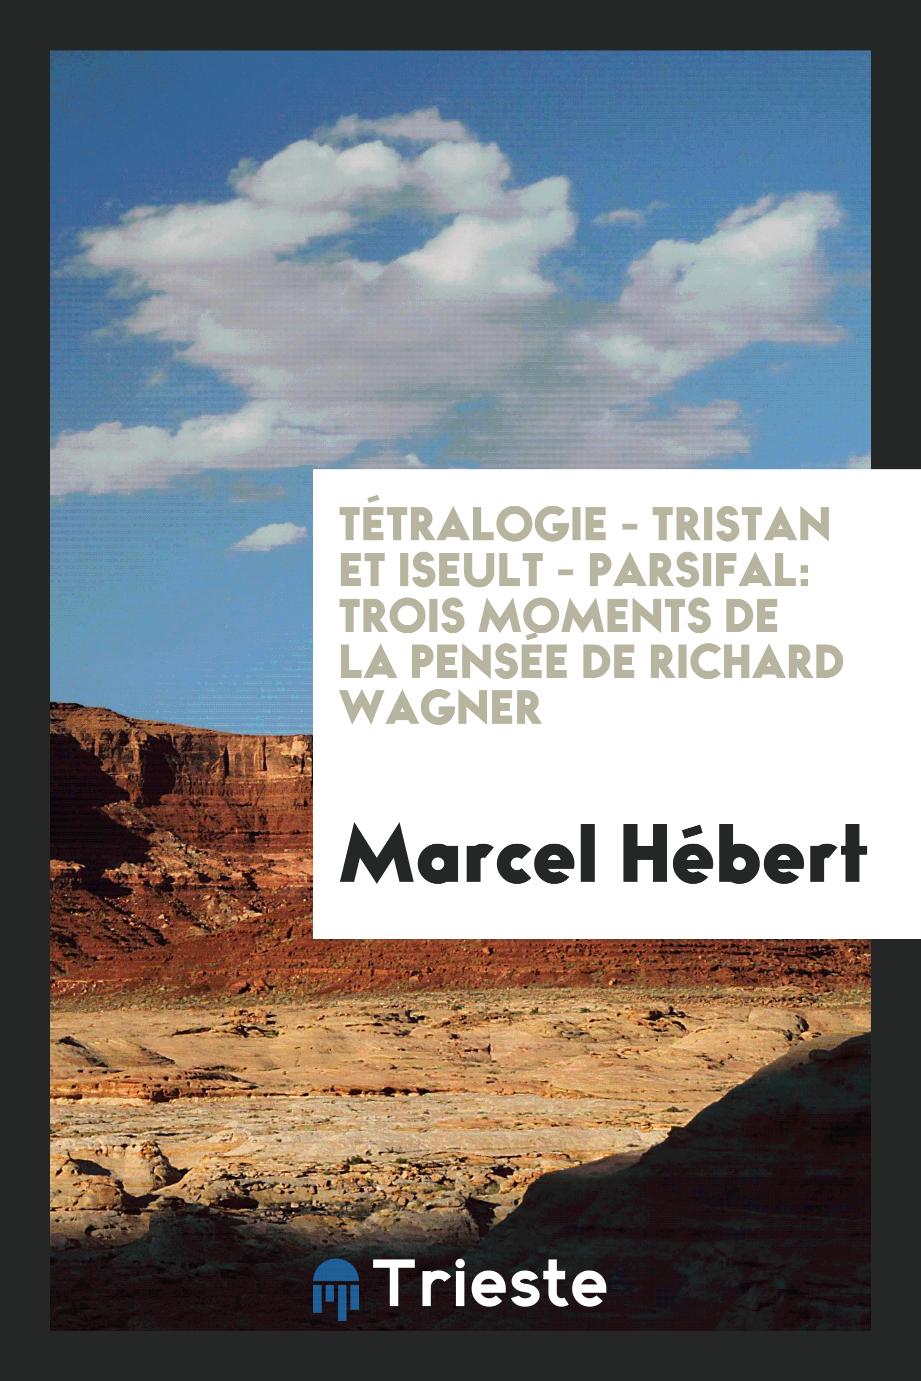 Tétralogie - Tristan et Iseult - Parsifal: Trois Moments de la Pensée de Richard Wagner